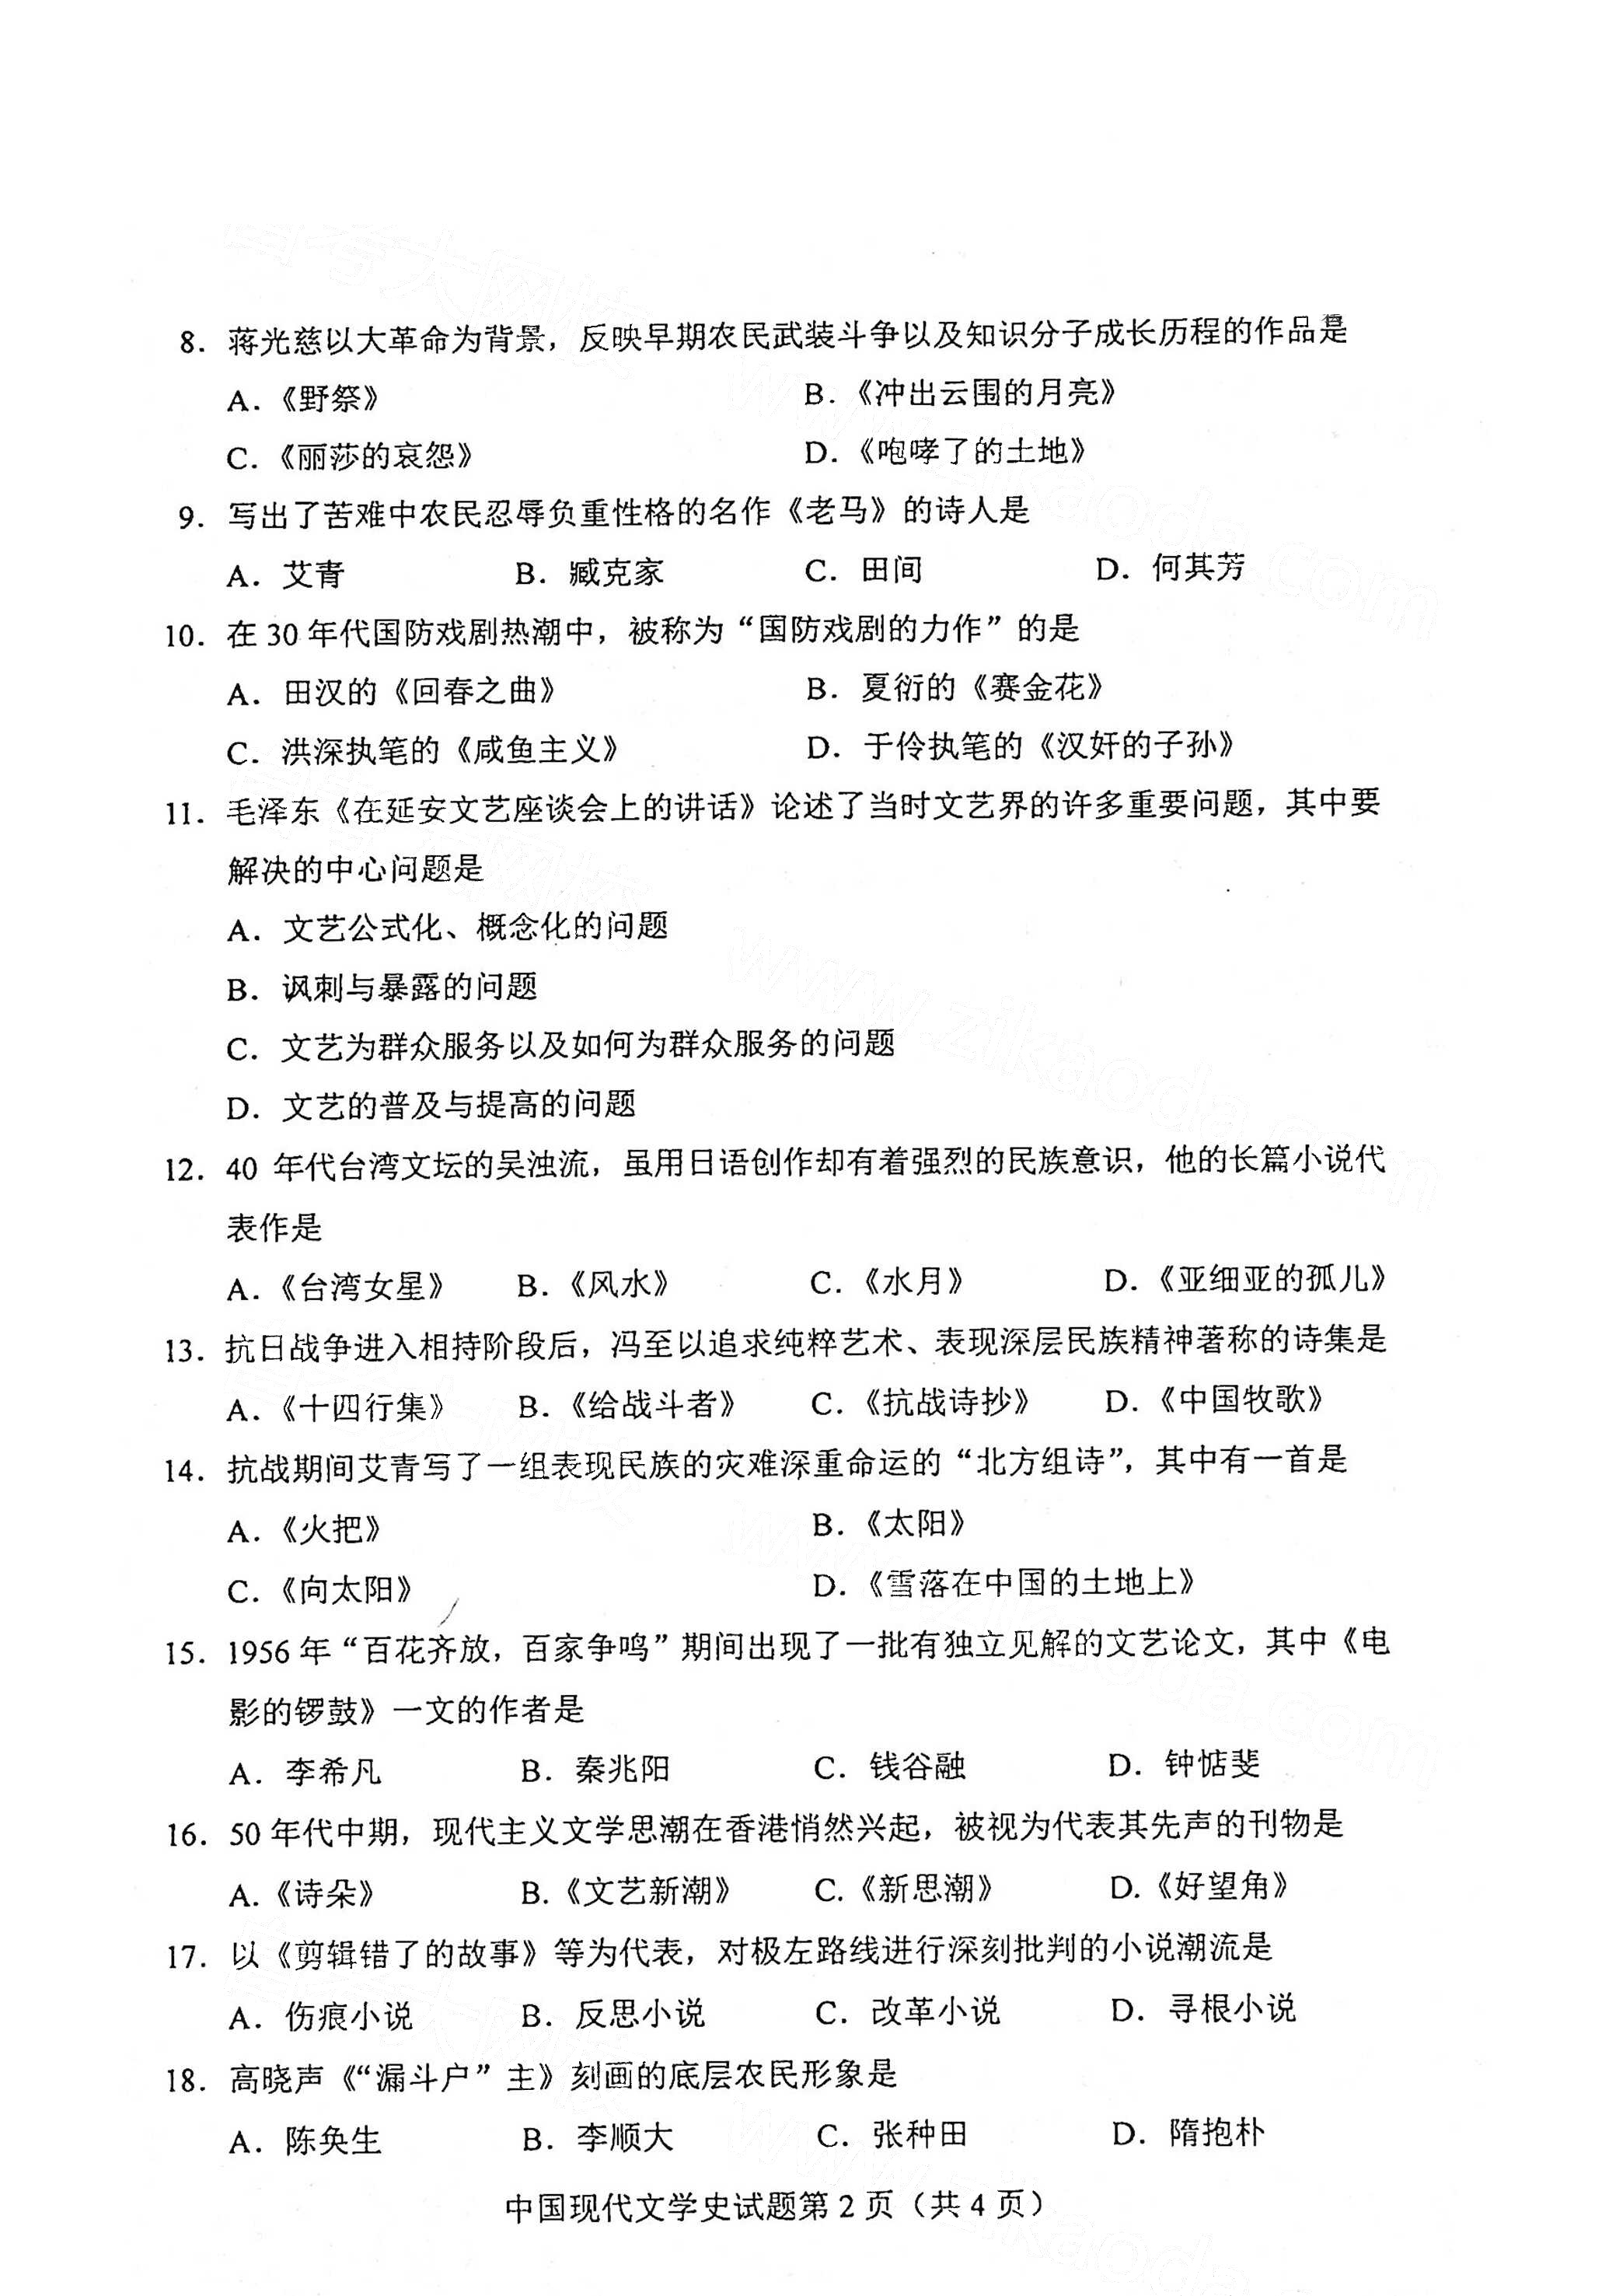 全国2021年4月海南自考00537中国现代文学史真题试卷